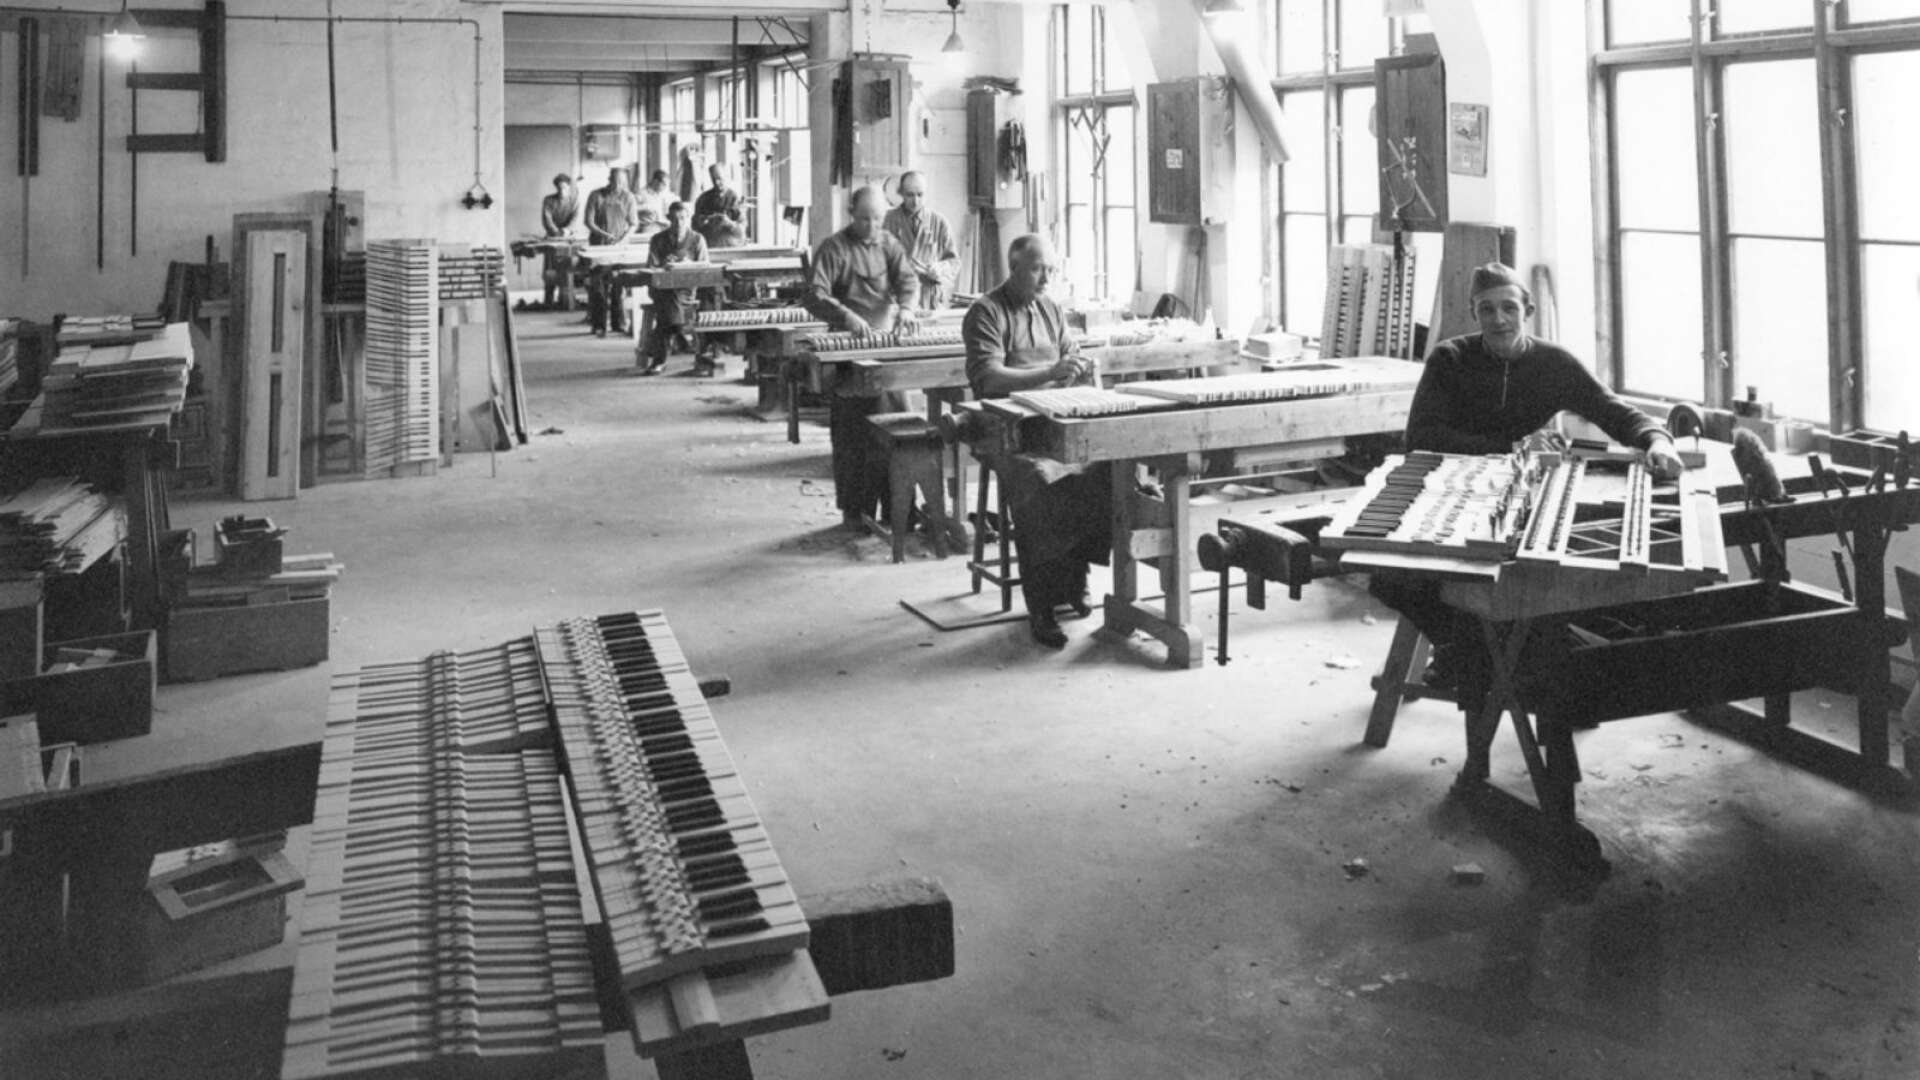 Så här såg det ut inne i fabriken där det tillverkades orglar och pianon. Okänt årtal när bilden togs.